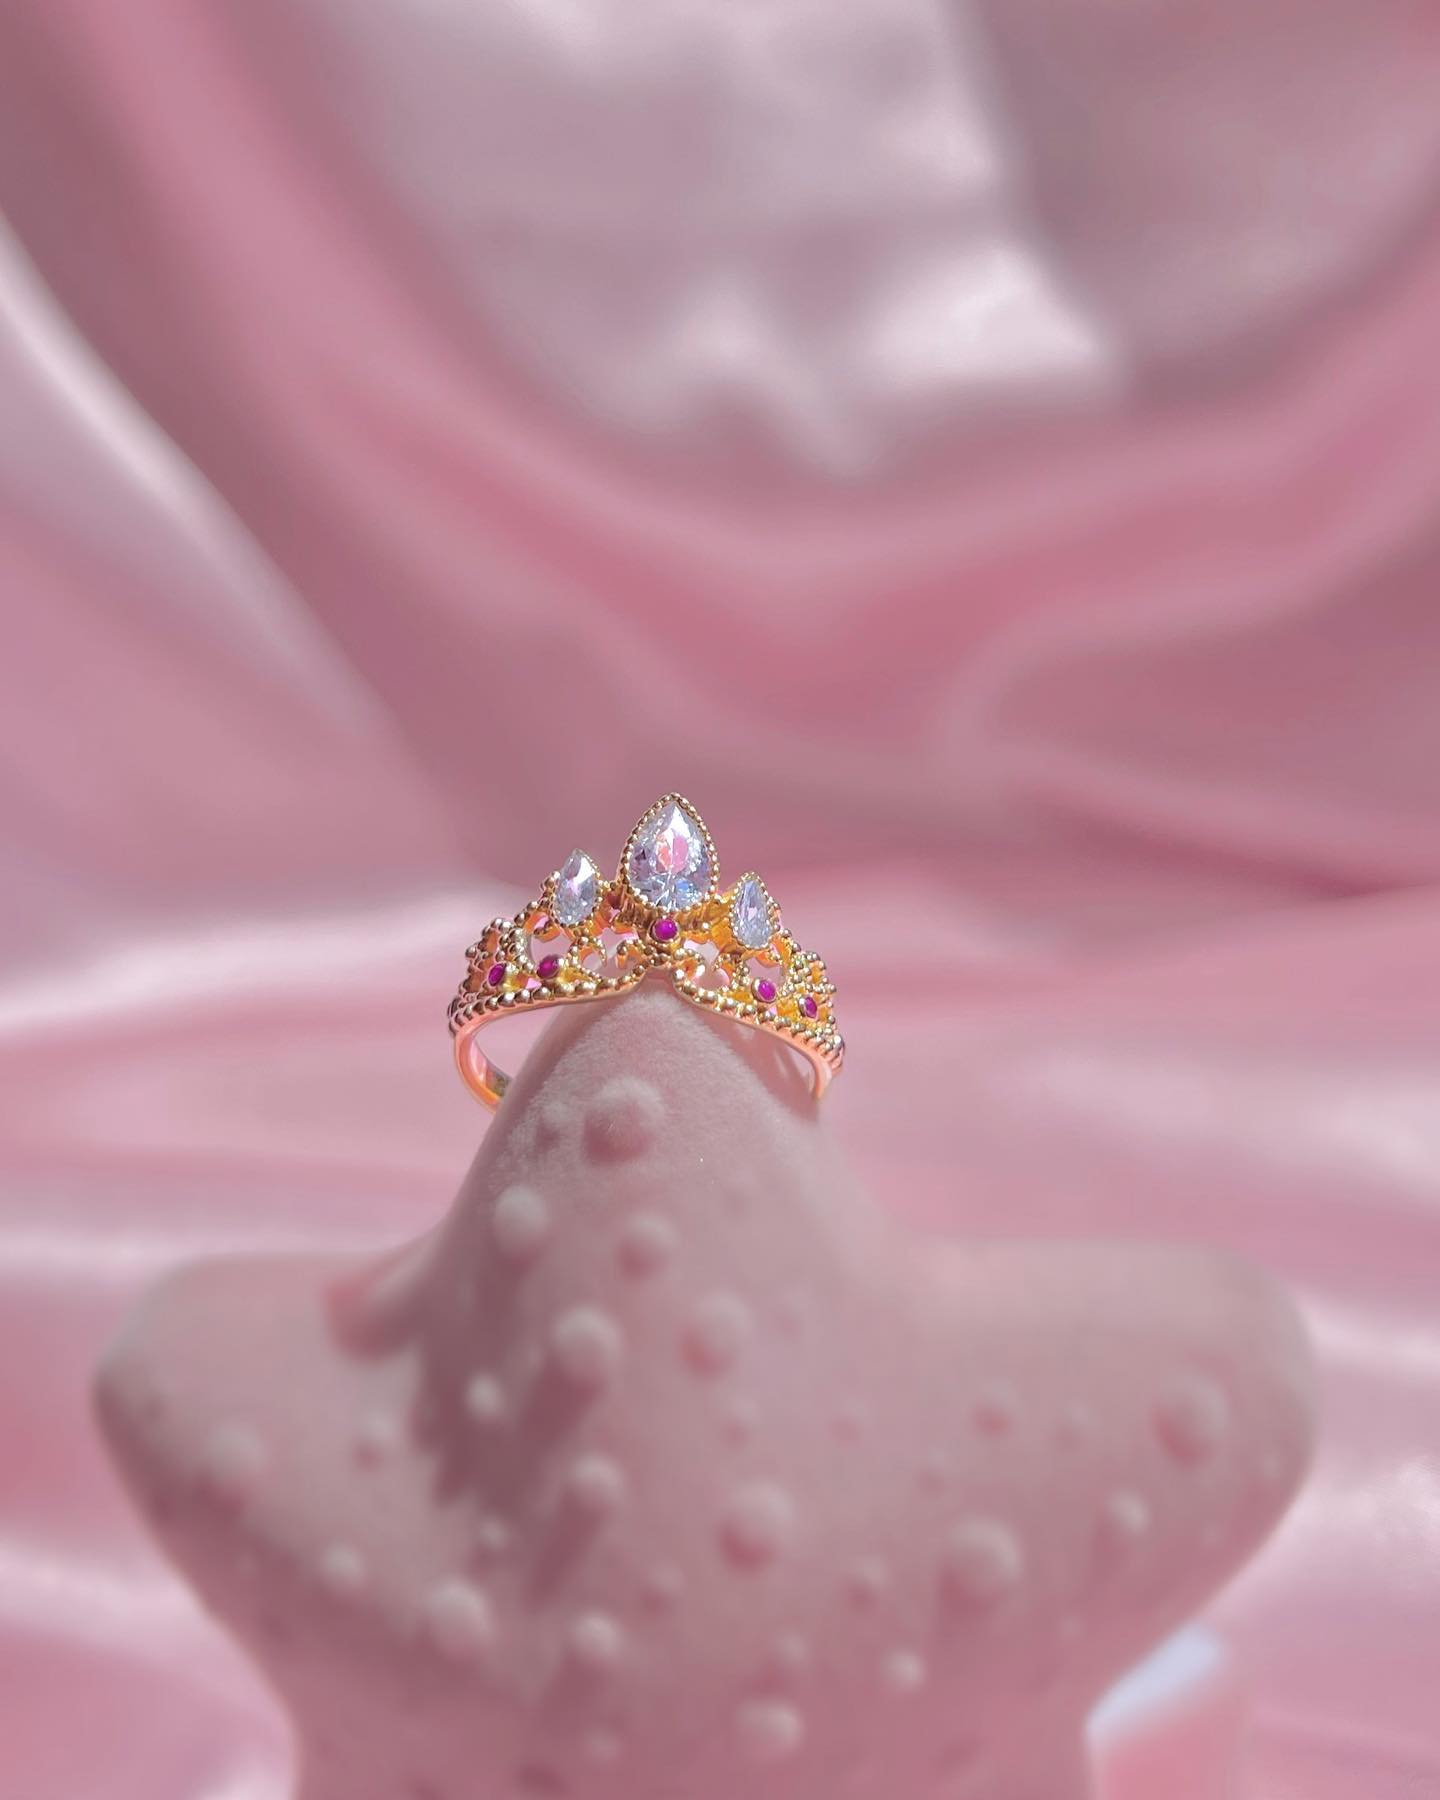 Rapunzel Tangled Crown Tiara Ring